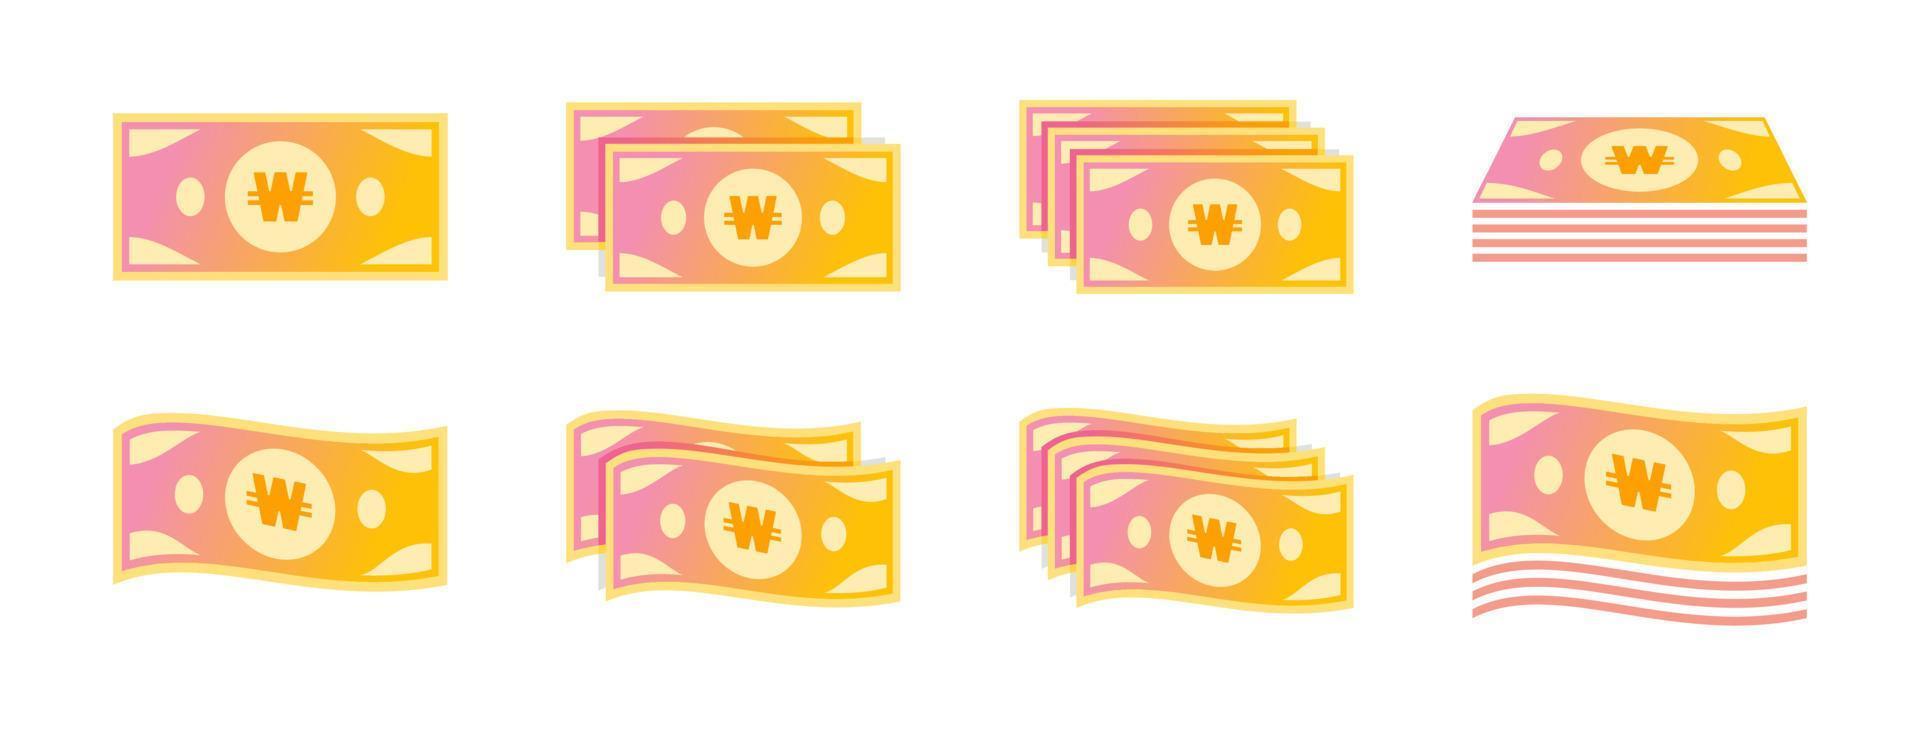 Koreanisch gewonnen Banknote Symbol einstellen vektor